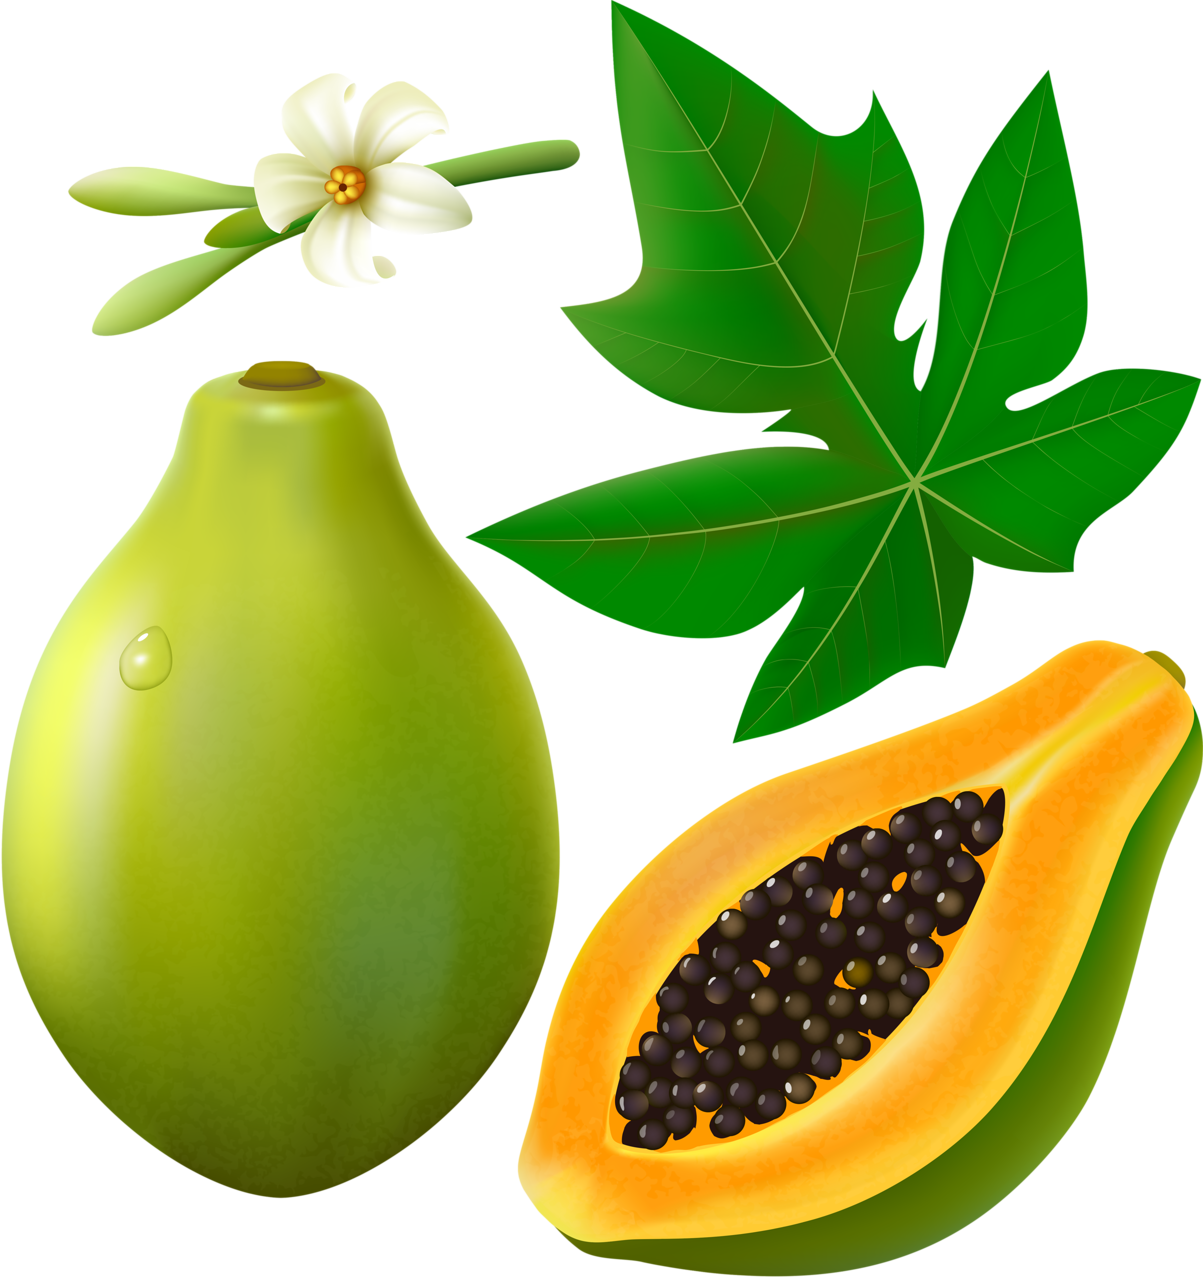 Papaya Green Free Download Image PNG Image